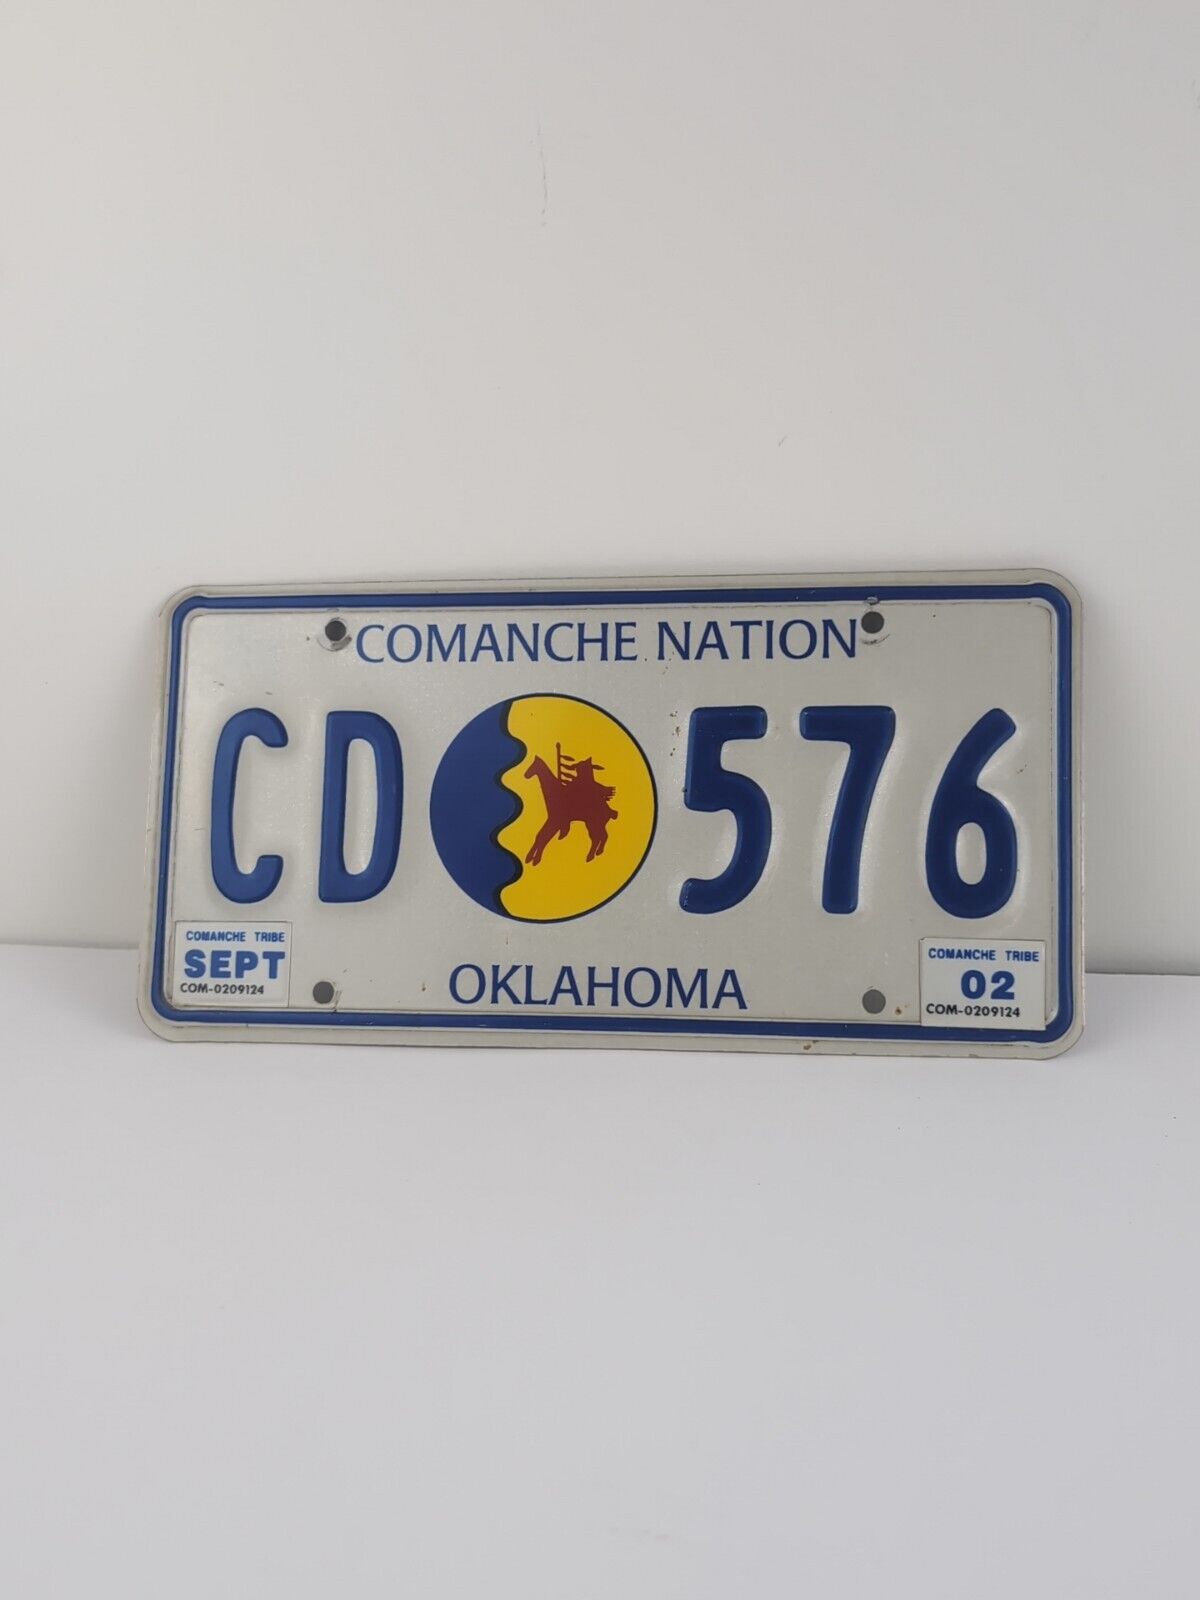 Comanche Nation Oklahoma License Plate CD 576